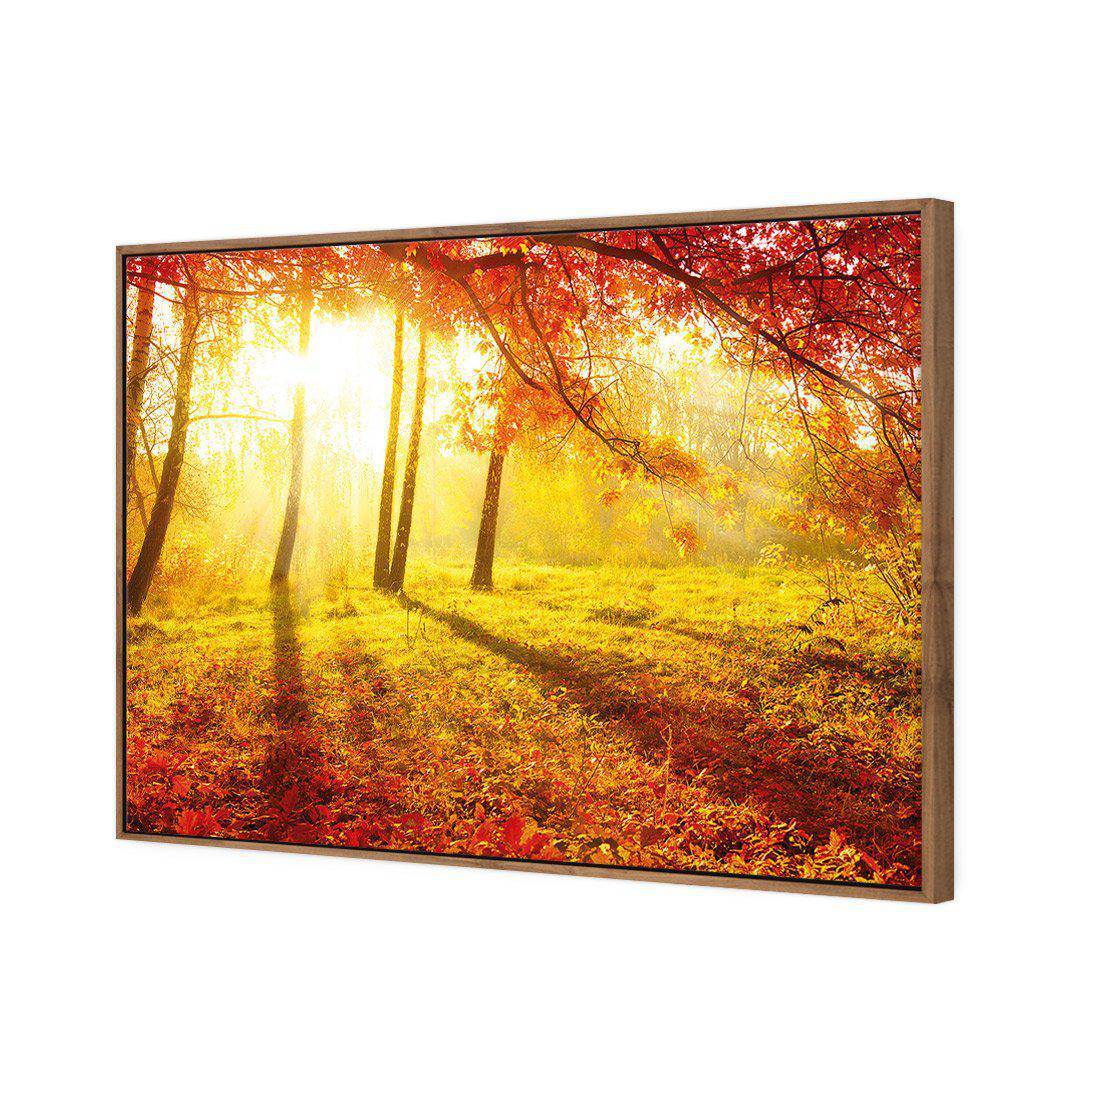 Sun Shadows Canvas Art-Canvas-Wall Art Designs-45x30cm-Canvas - Natural Frame-Wall Art Designs